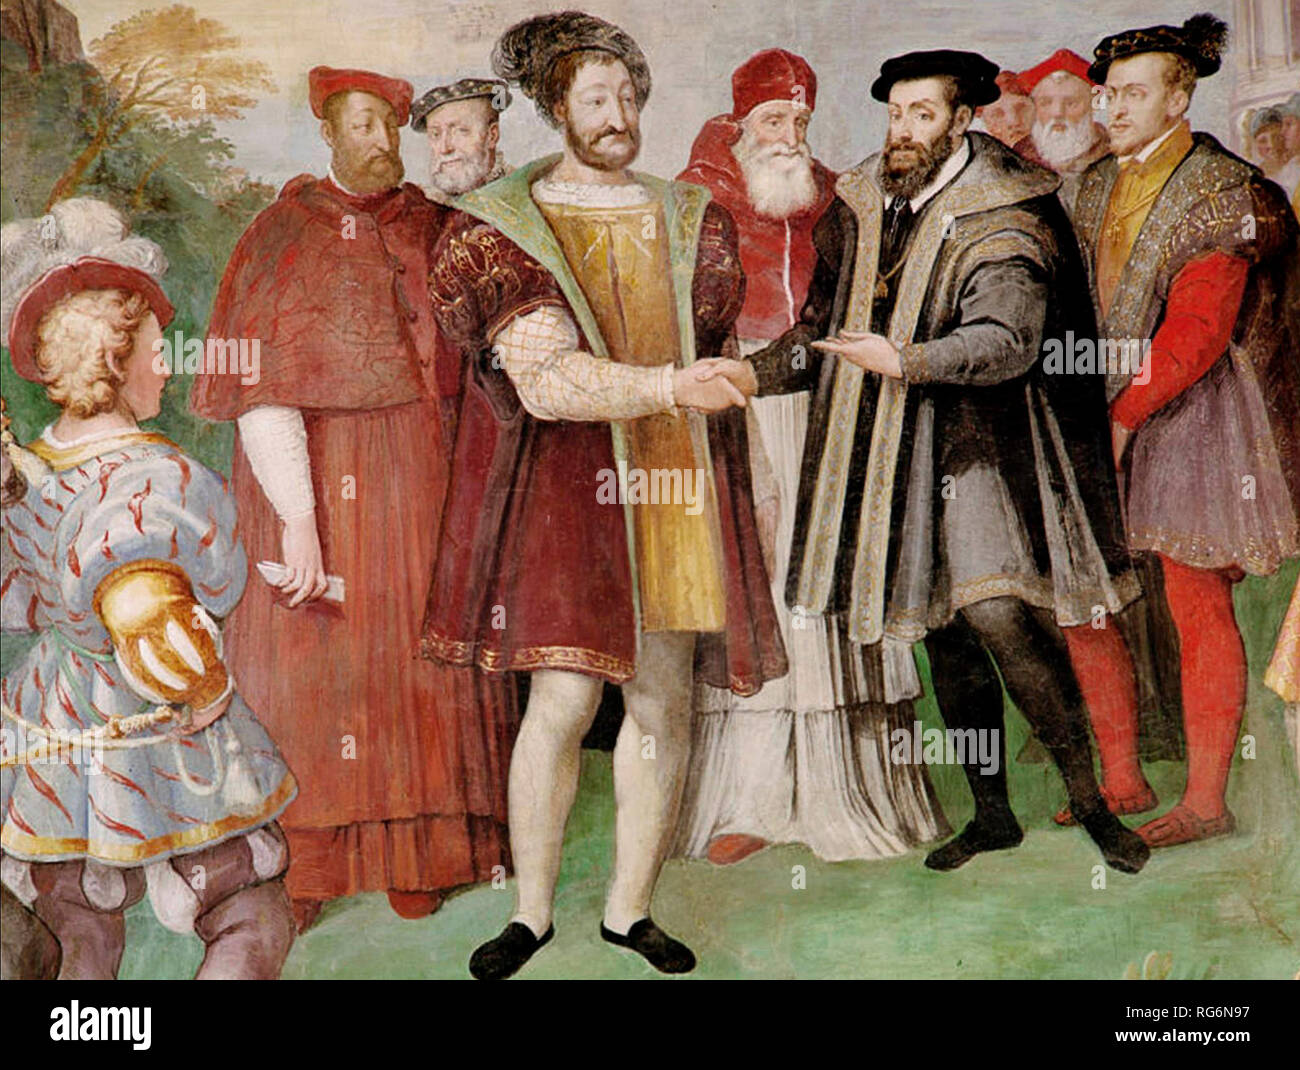 François I et Charles V fait la paix à la trêve de Nice en 1538. Francis a refusé de rencontrer Charles en personne, et le traité a été signé dans des chambres séparées. Trêve de Nice 1538. Taddeo Zuccari Banque D'Images